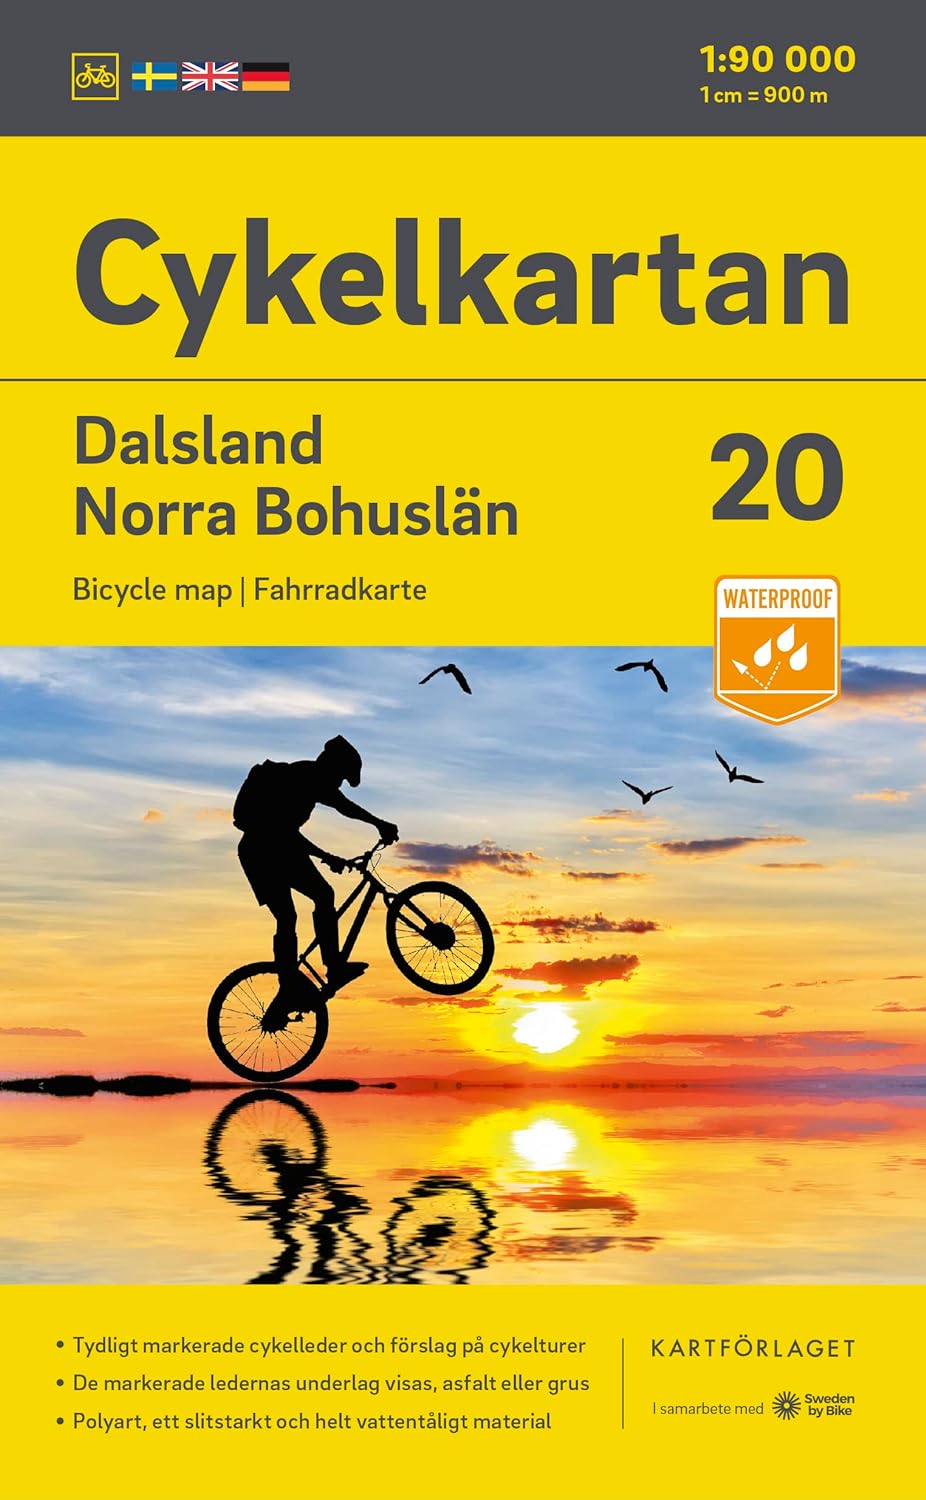 Online bestellen: Fietskaart 20 Cykelkartan Dalsland - Norra Bohuslän - Bohuslän North | Norstedts